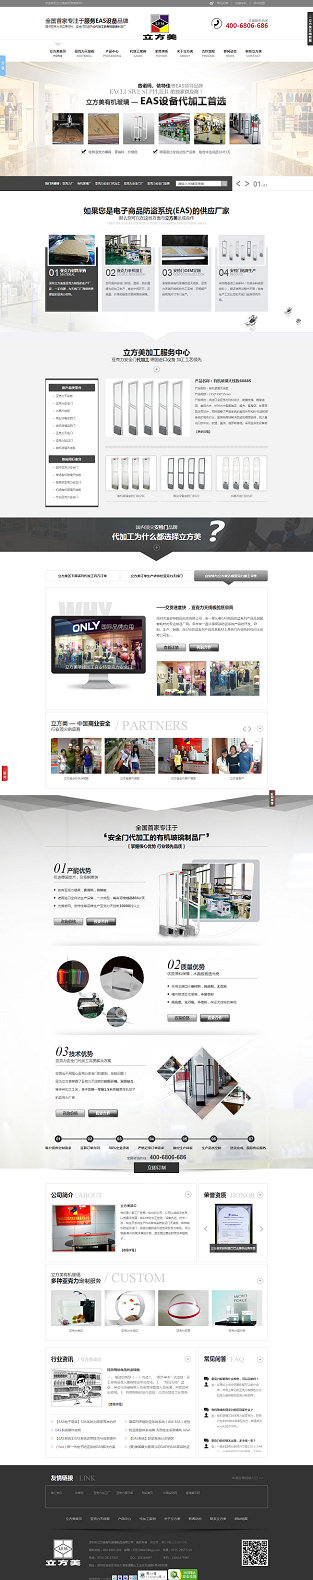 深圳立方美亚克力营销型网站案例展示